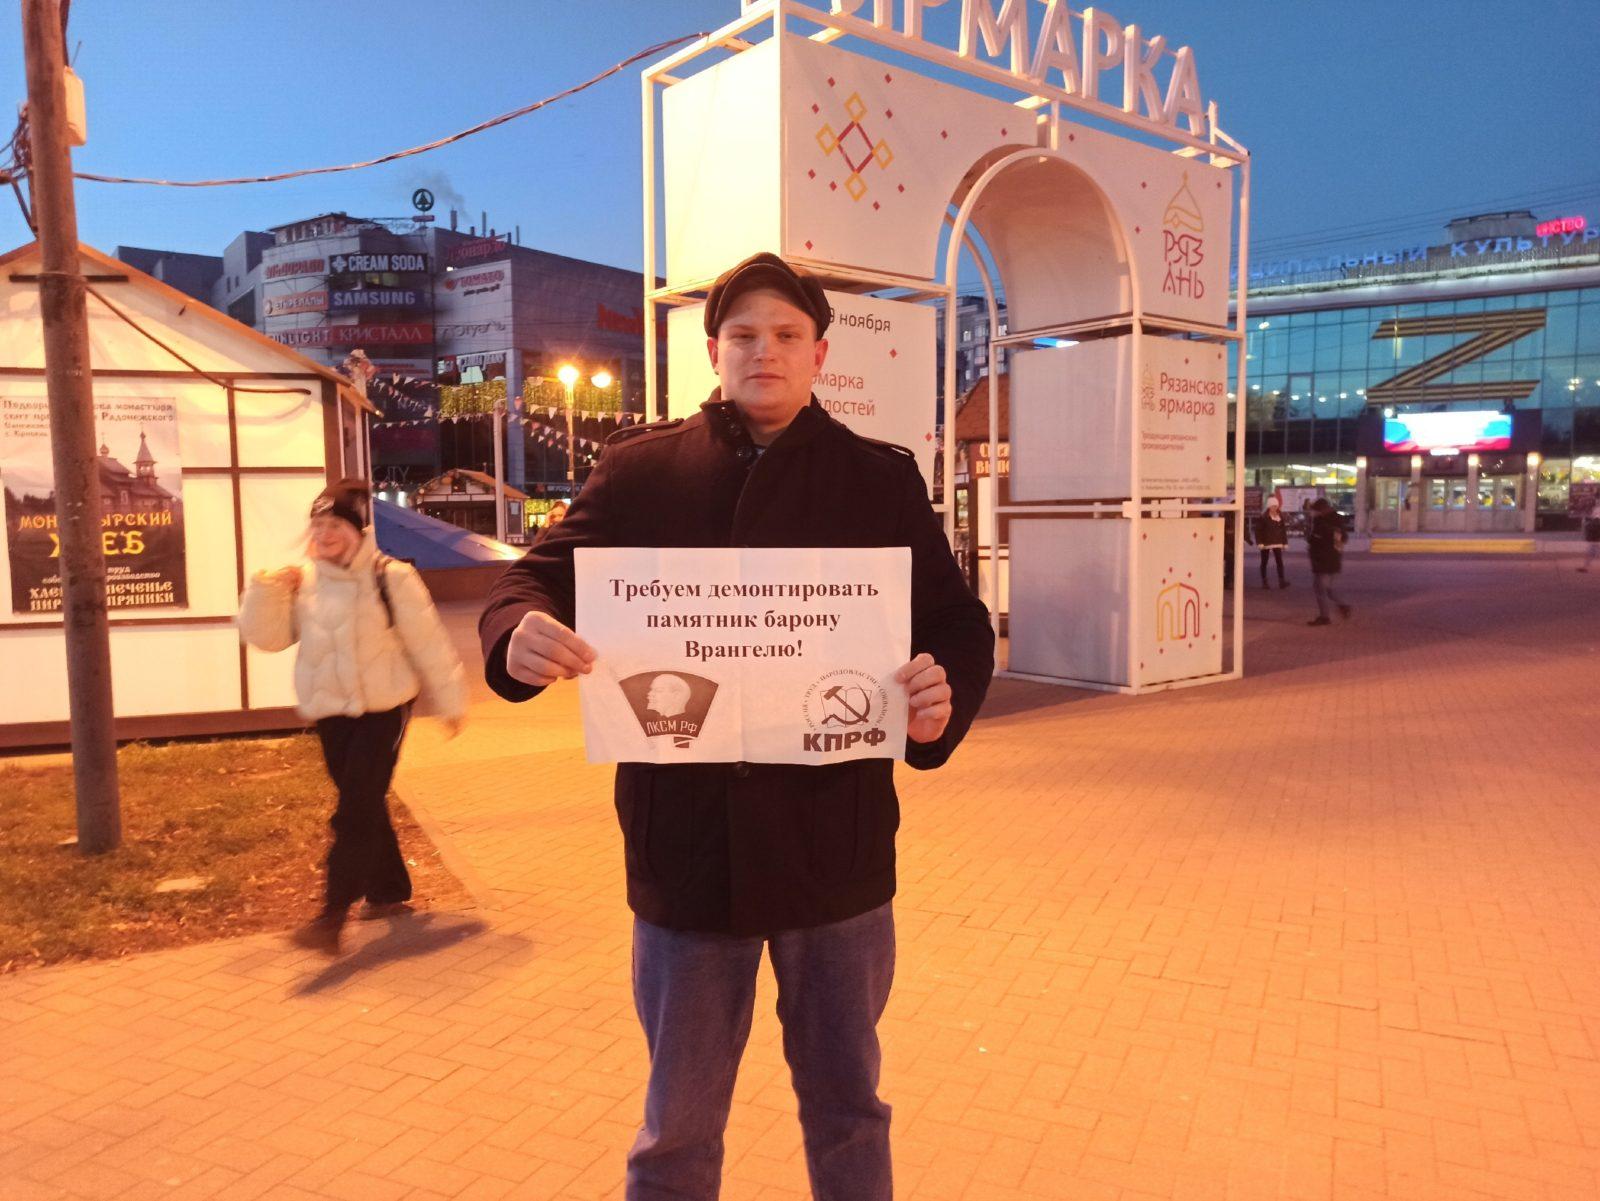 Рязанские комсомольцы провели акцию протеста с требованием демонтировать памятник предателю Врангелю